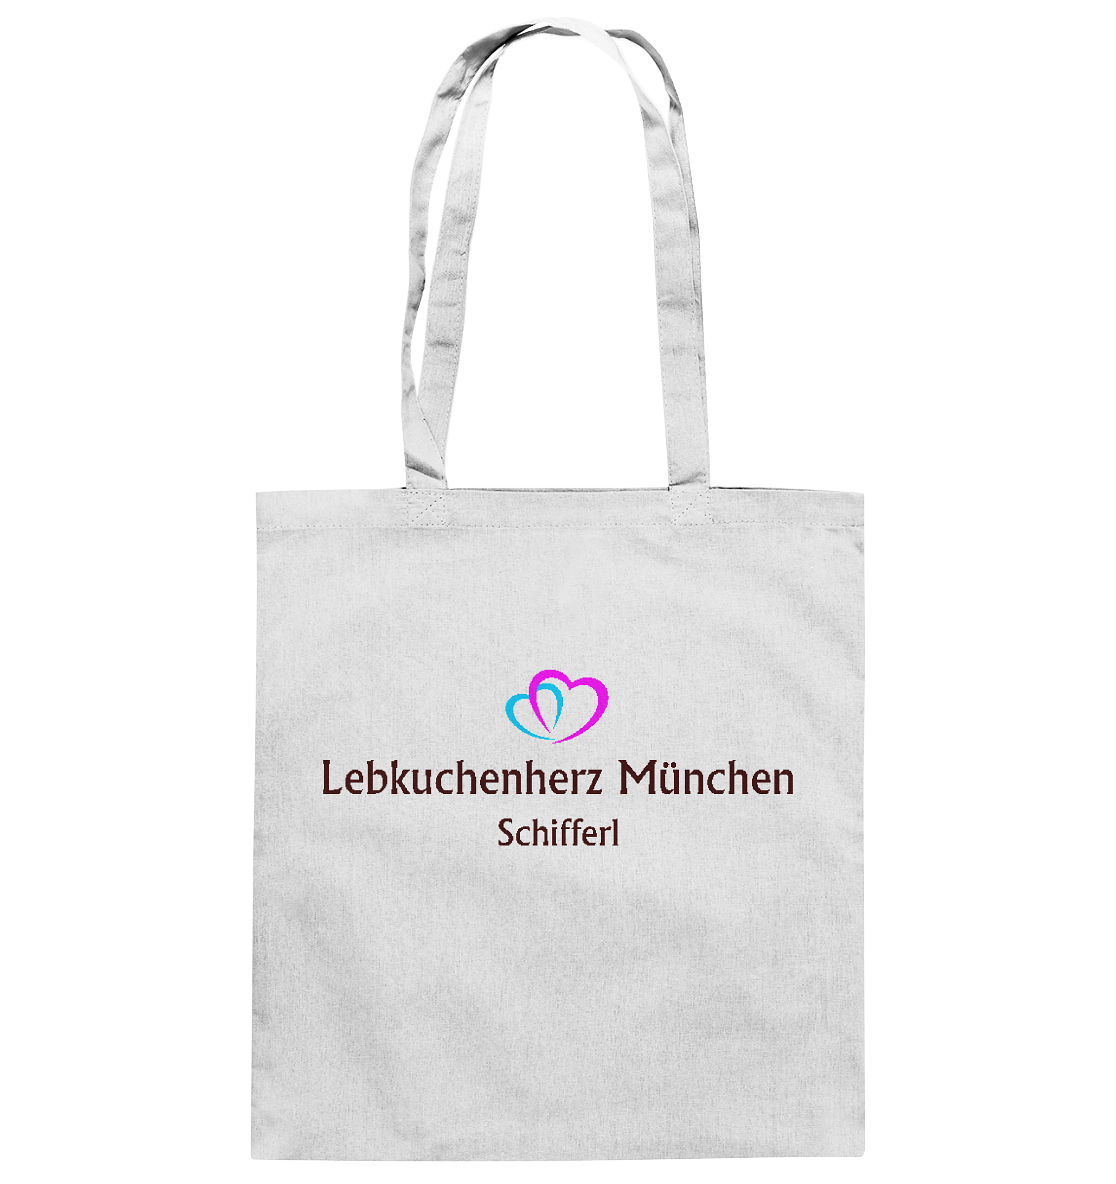 Baumwolltaschen mit eigenem Logo - Baumwolltasche - Online Kaufhaus München